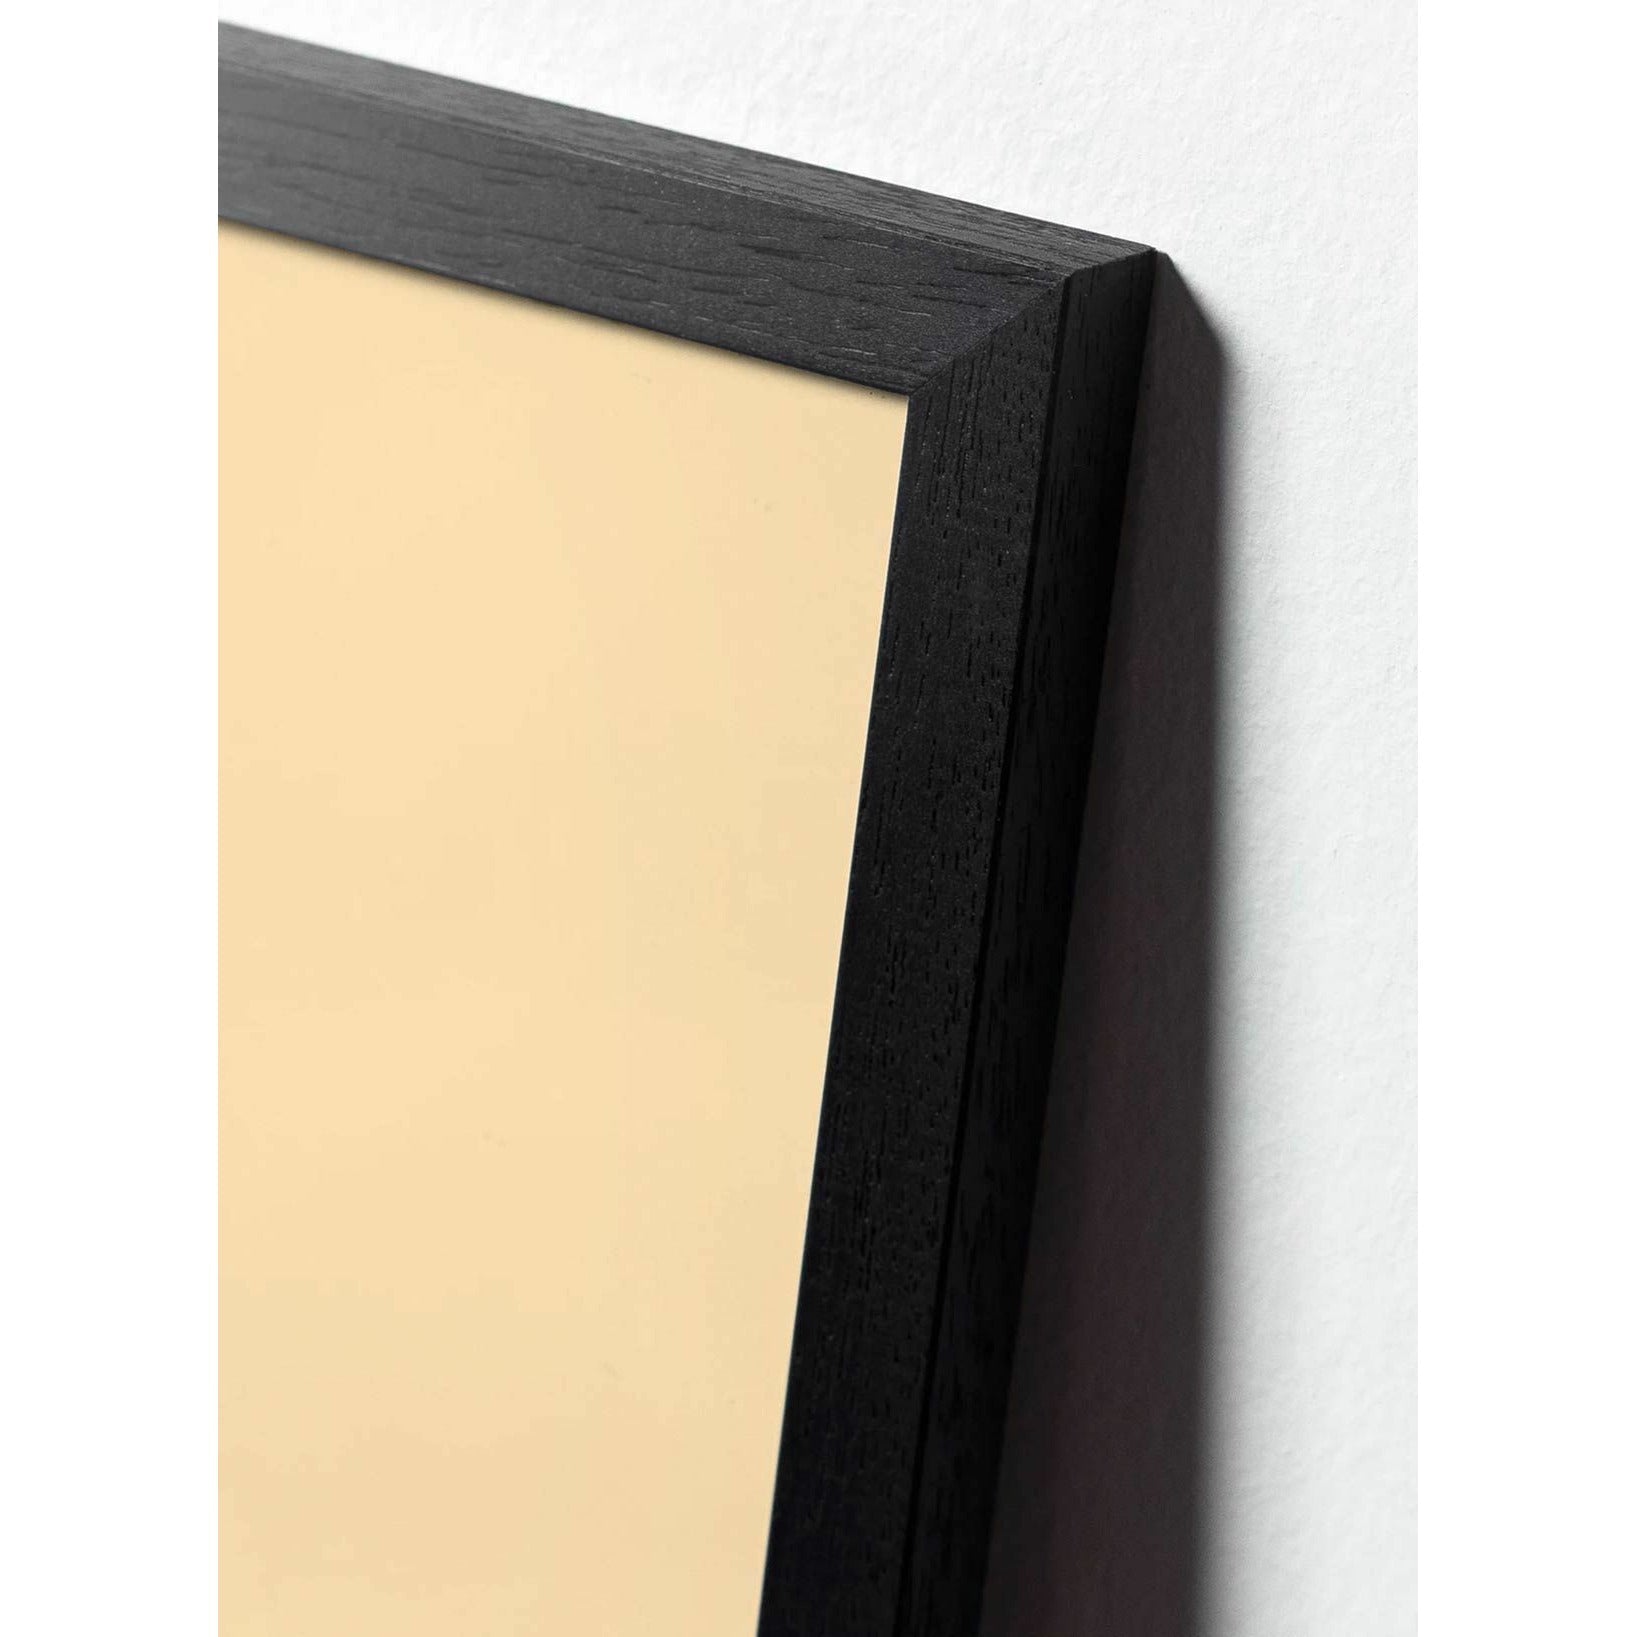 brainchild Klassisches Poster von Kiefernkegel, Rahmen im schwarz lackierten Holz 50x70 cm, sandfarbener Hintergrund